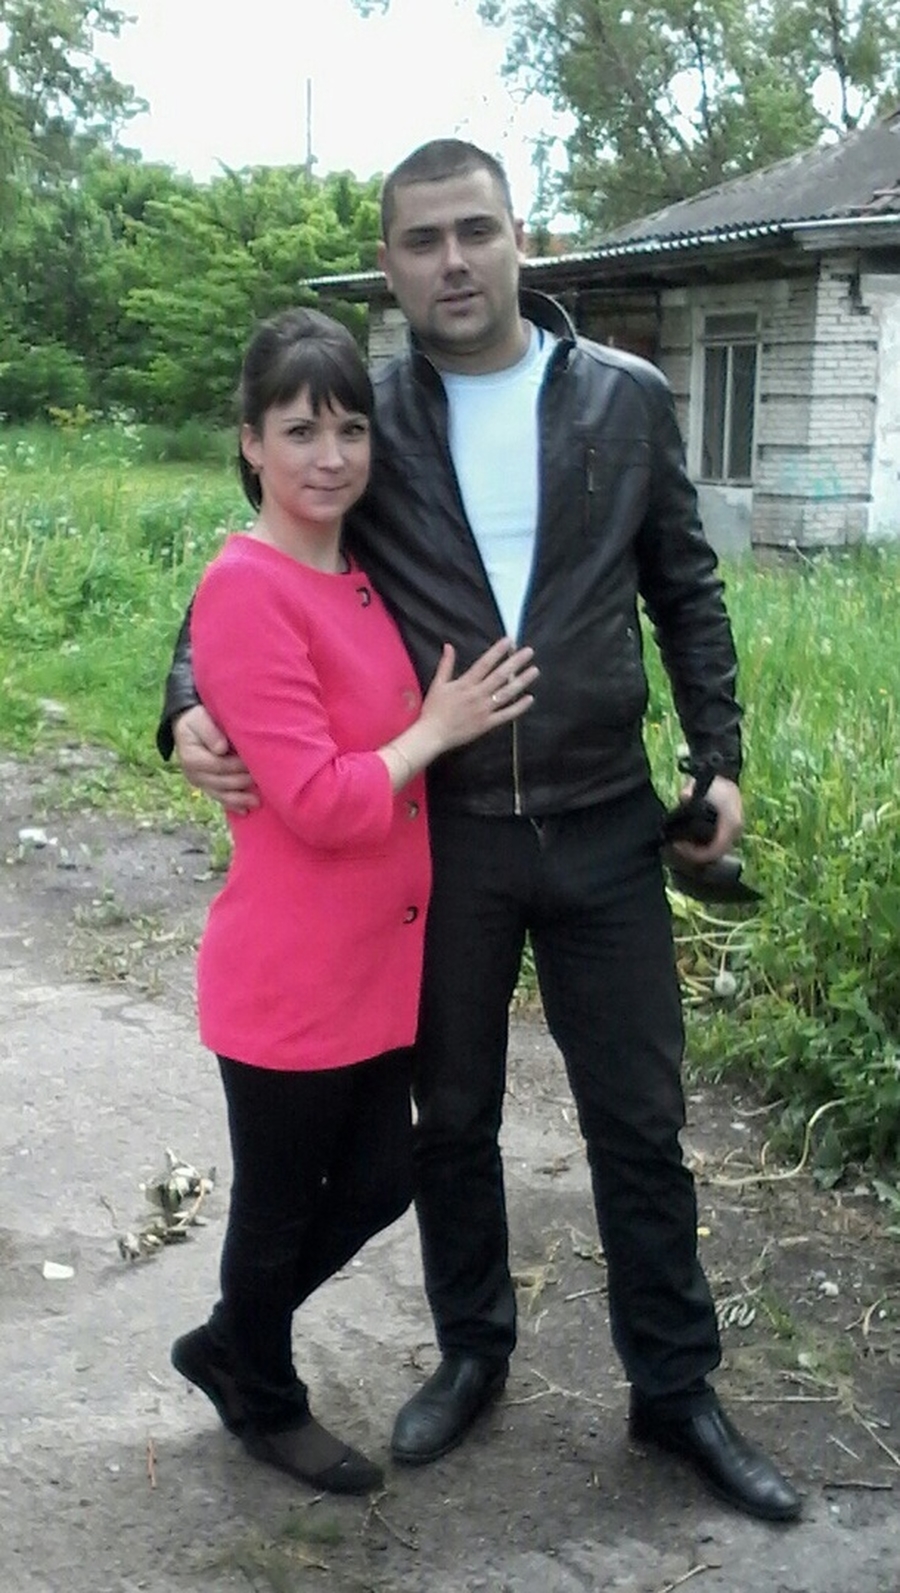 Андрей Егоров, спасший тонущего ребенка: самочувствие нормальное